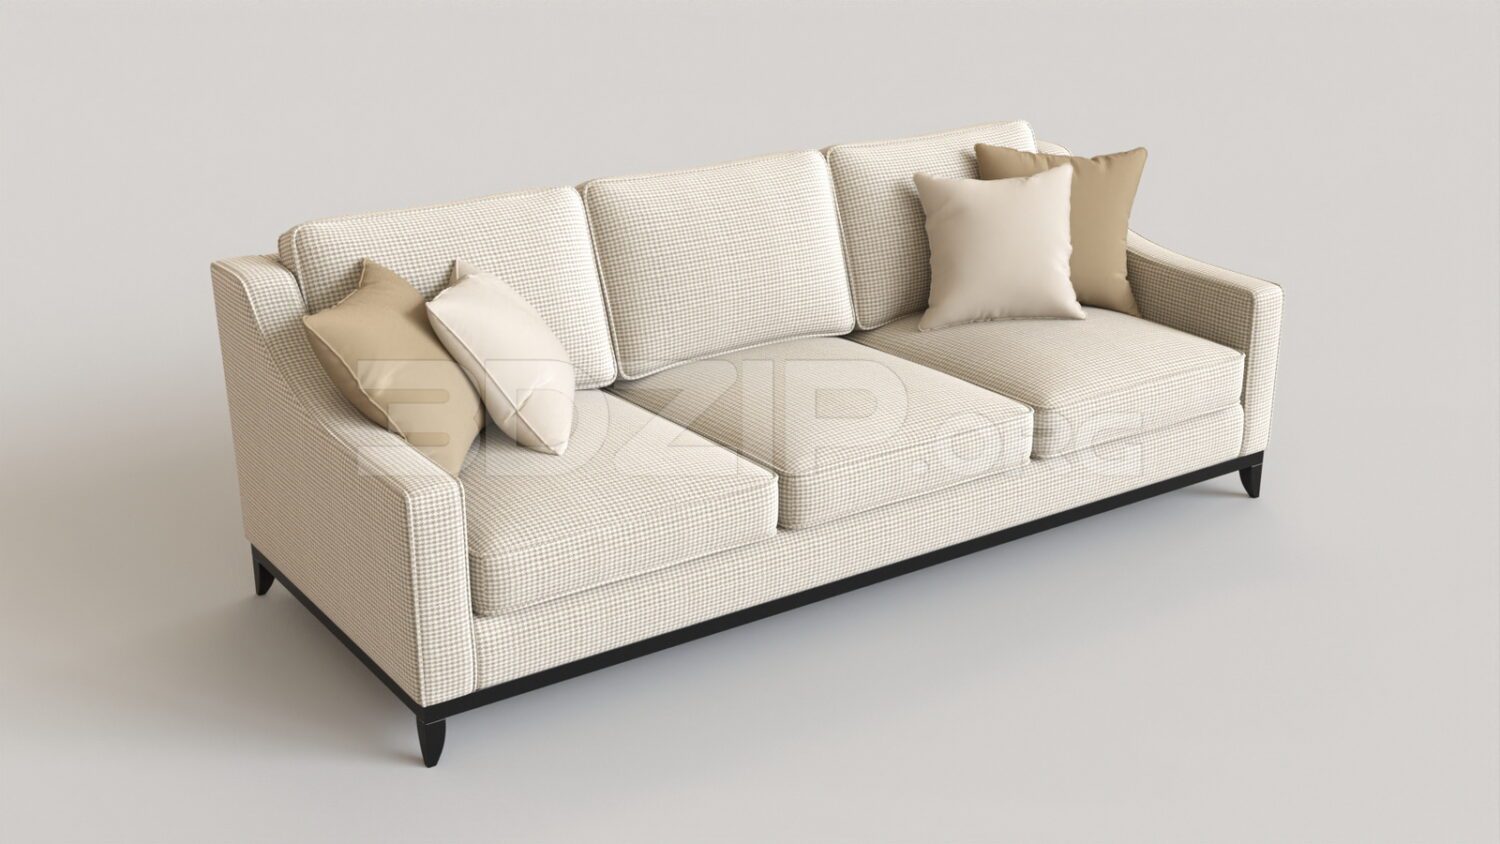 4864. Free 3D Sofa Model Download